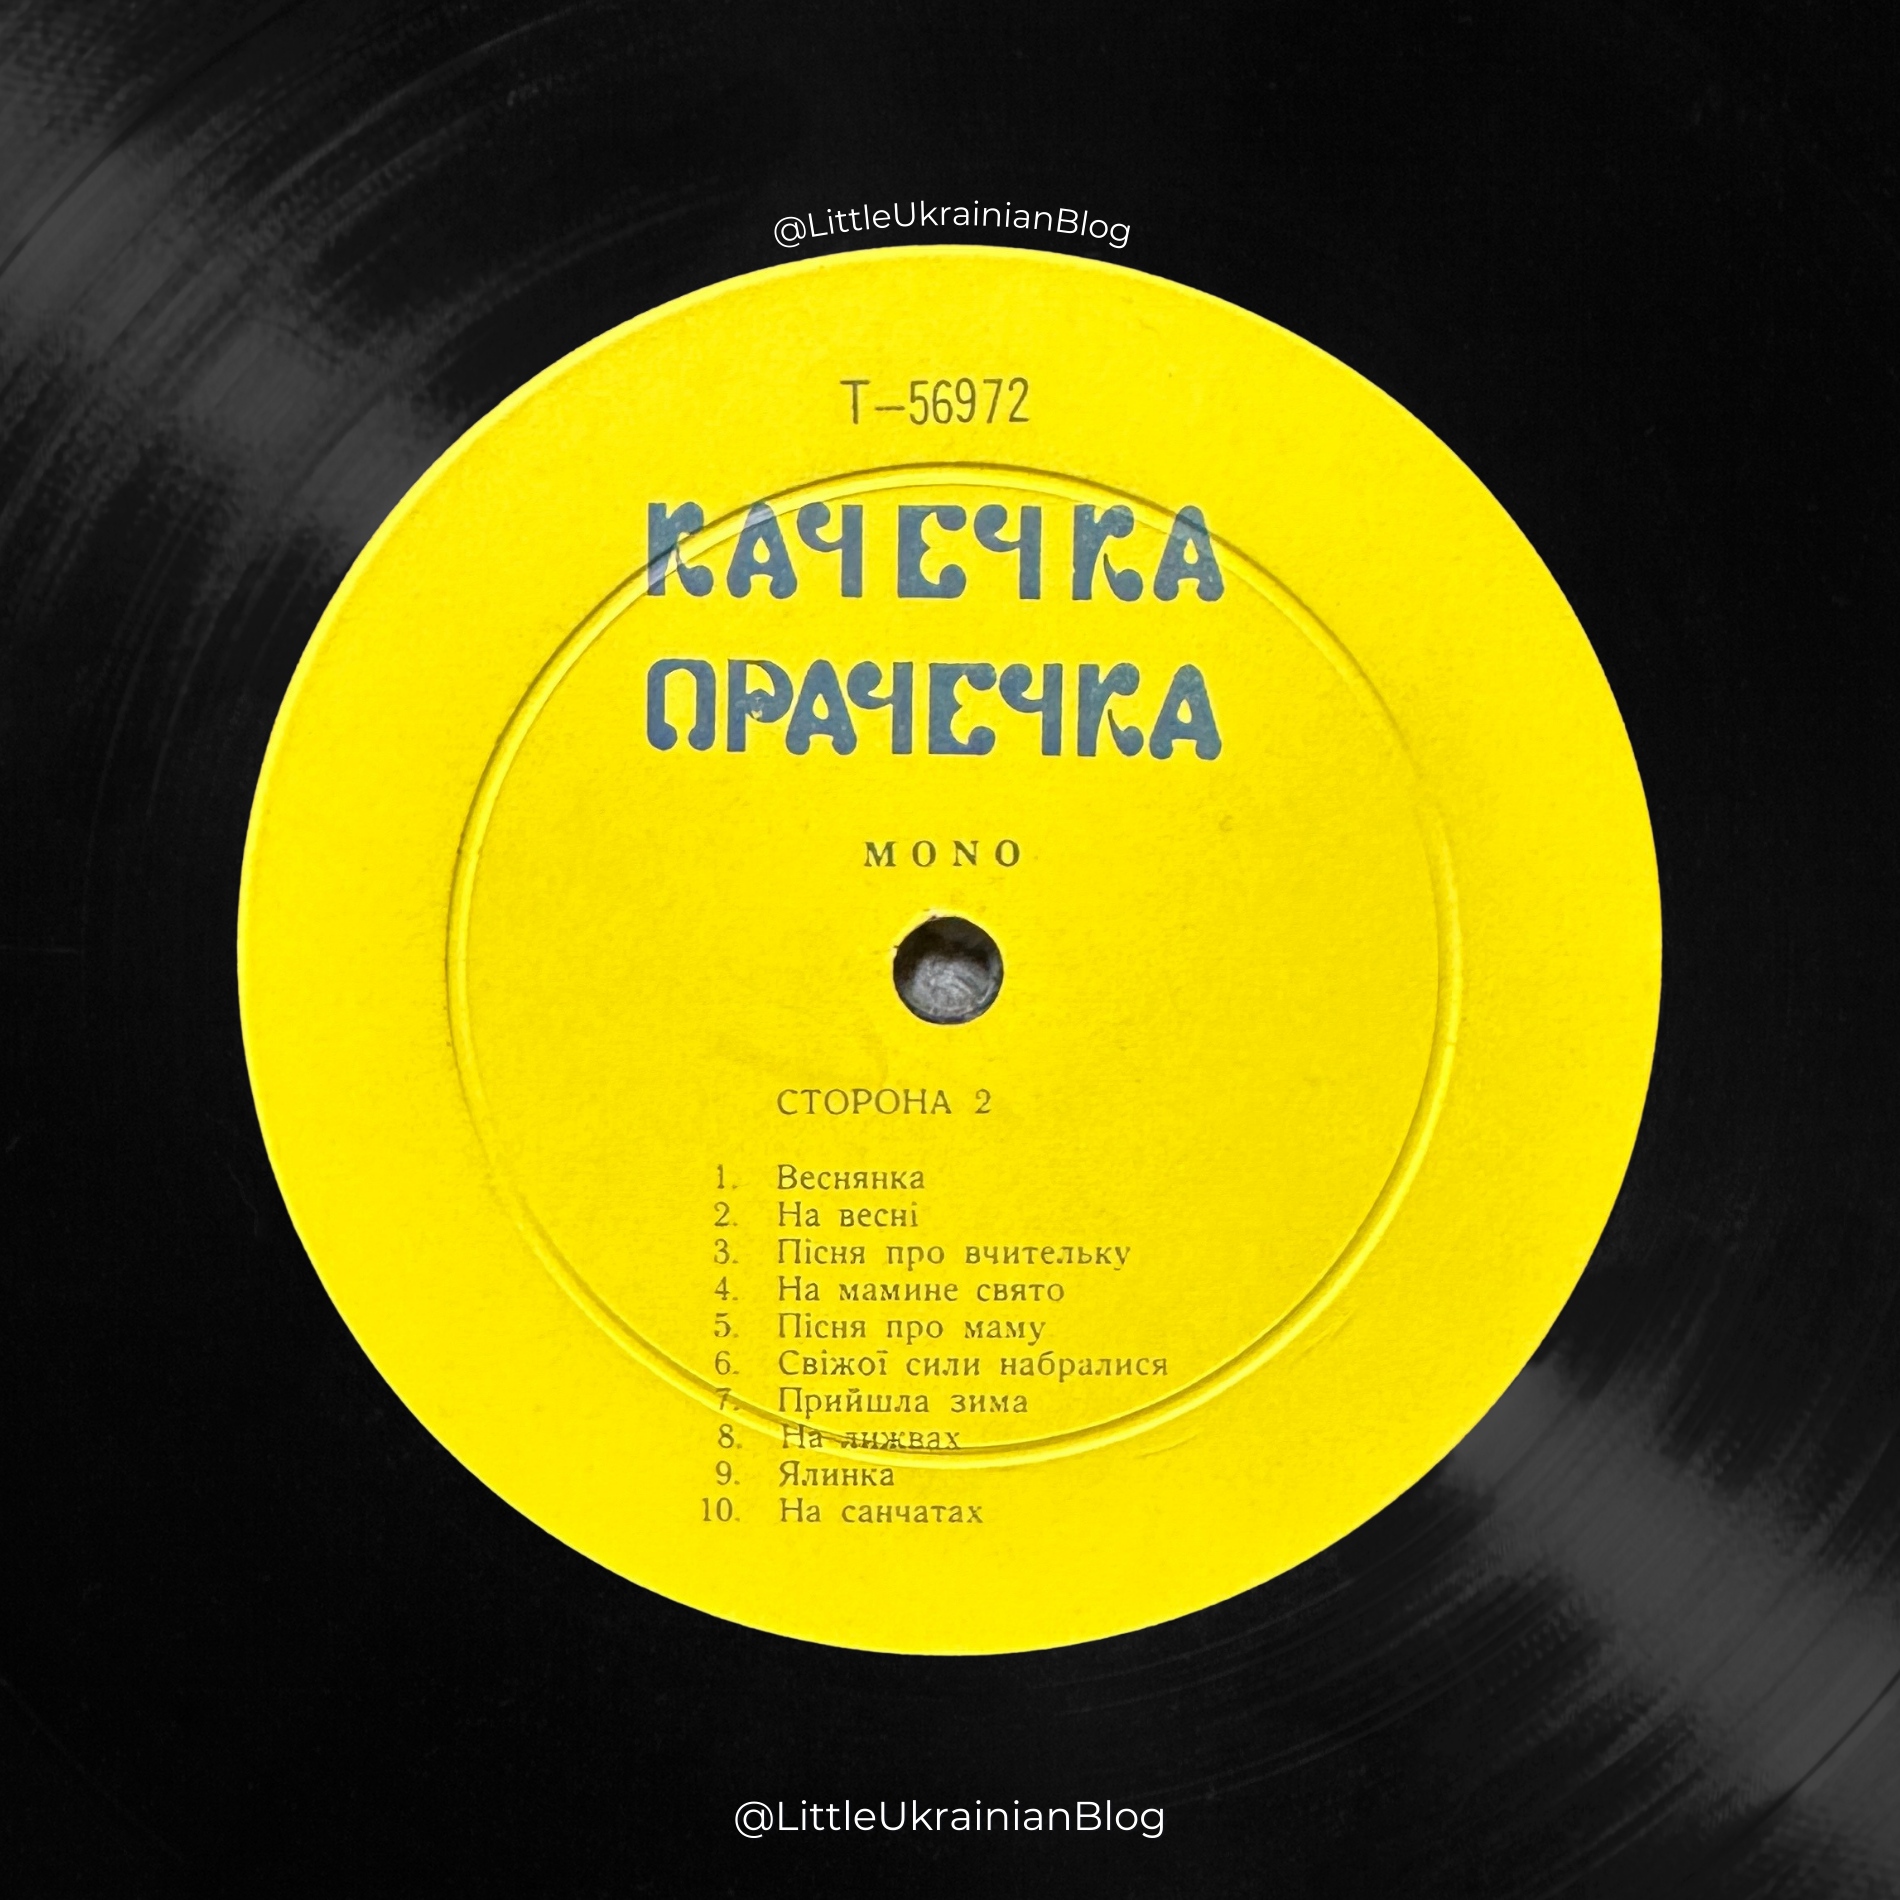 Качечка Прачечка​, Old Ukrainian Vinyl, Ukrainian Diaspora, Ukrainian LPs, Ukrainian records, Laundry Duckling, Laundry Duckling, Ukrainian Children's Recordings